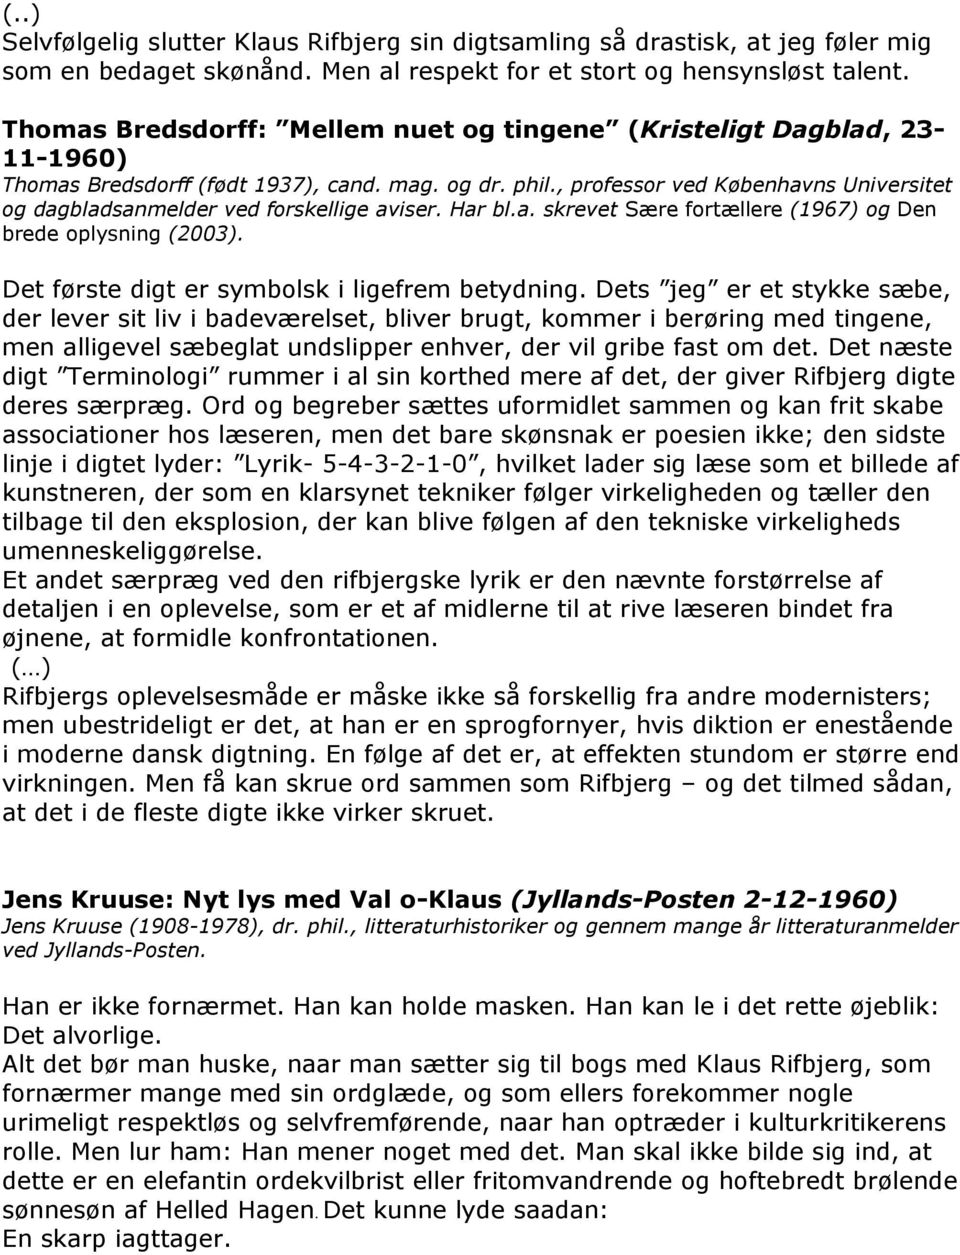 Klaus Rifbjerg: Livet i badeværelset (1960) - PDF Gratis download